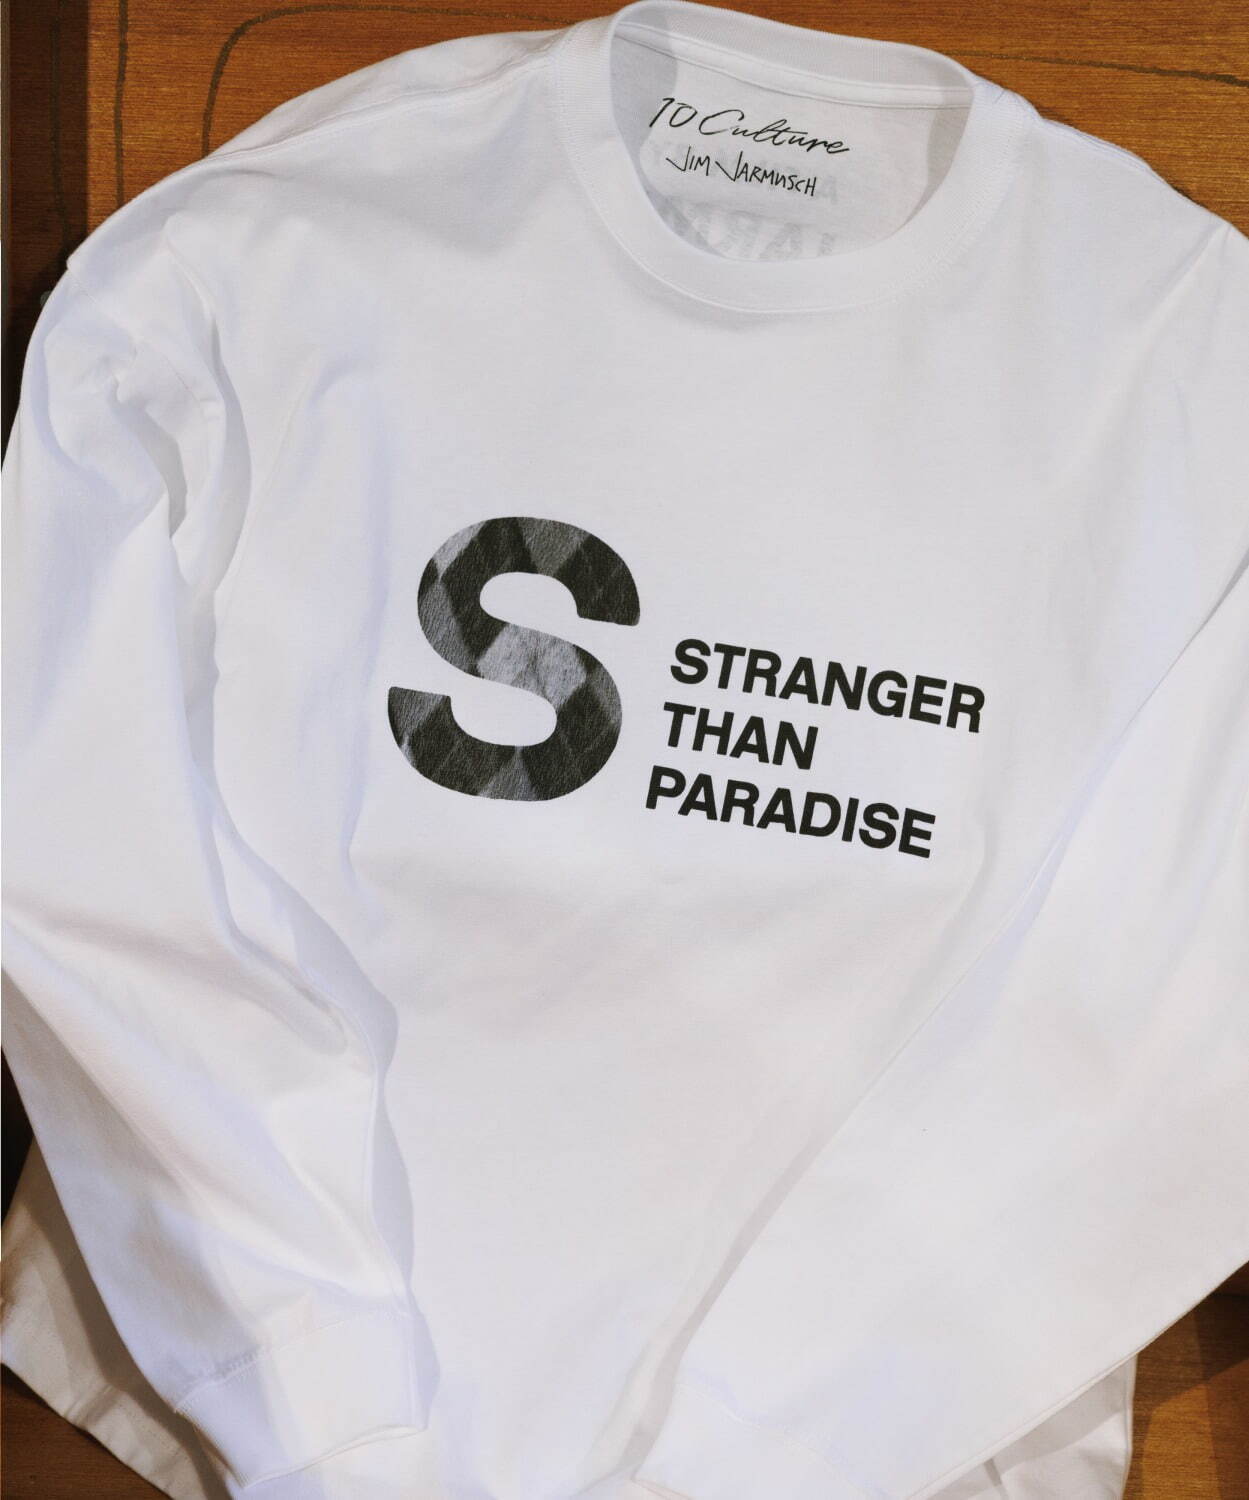 『ストレンジャー・ザン・パラダイス』
ロゴプリント ロングスリーブTシャツ 9,350円